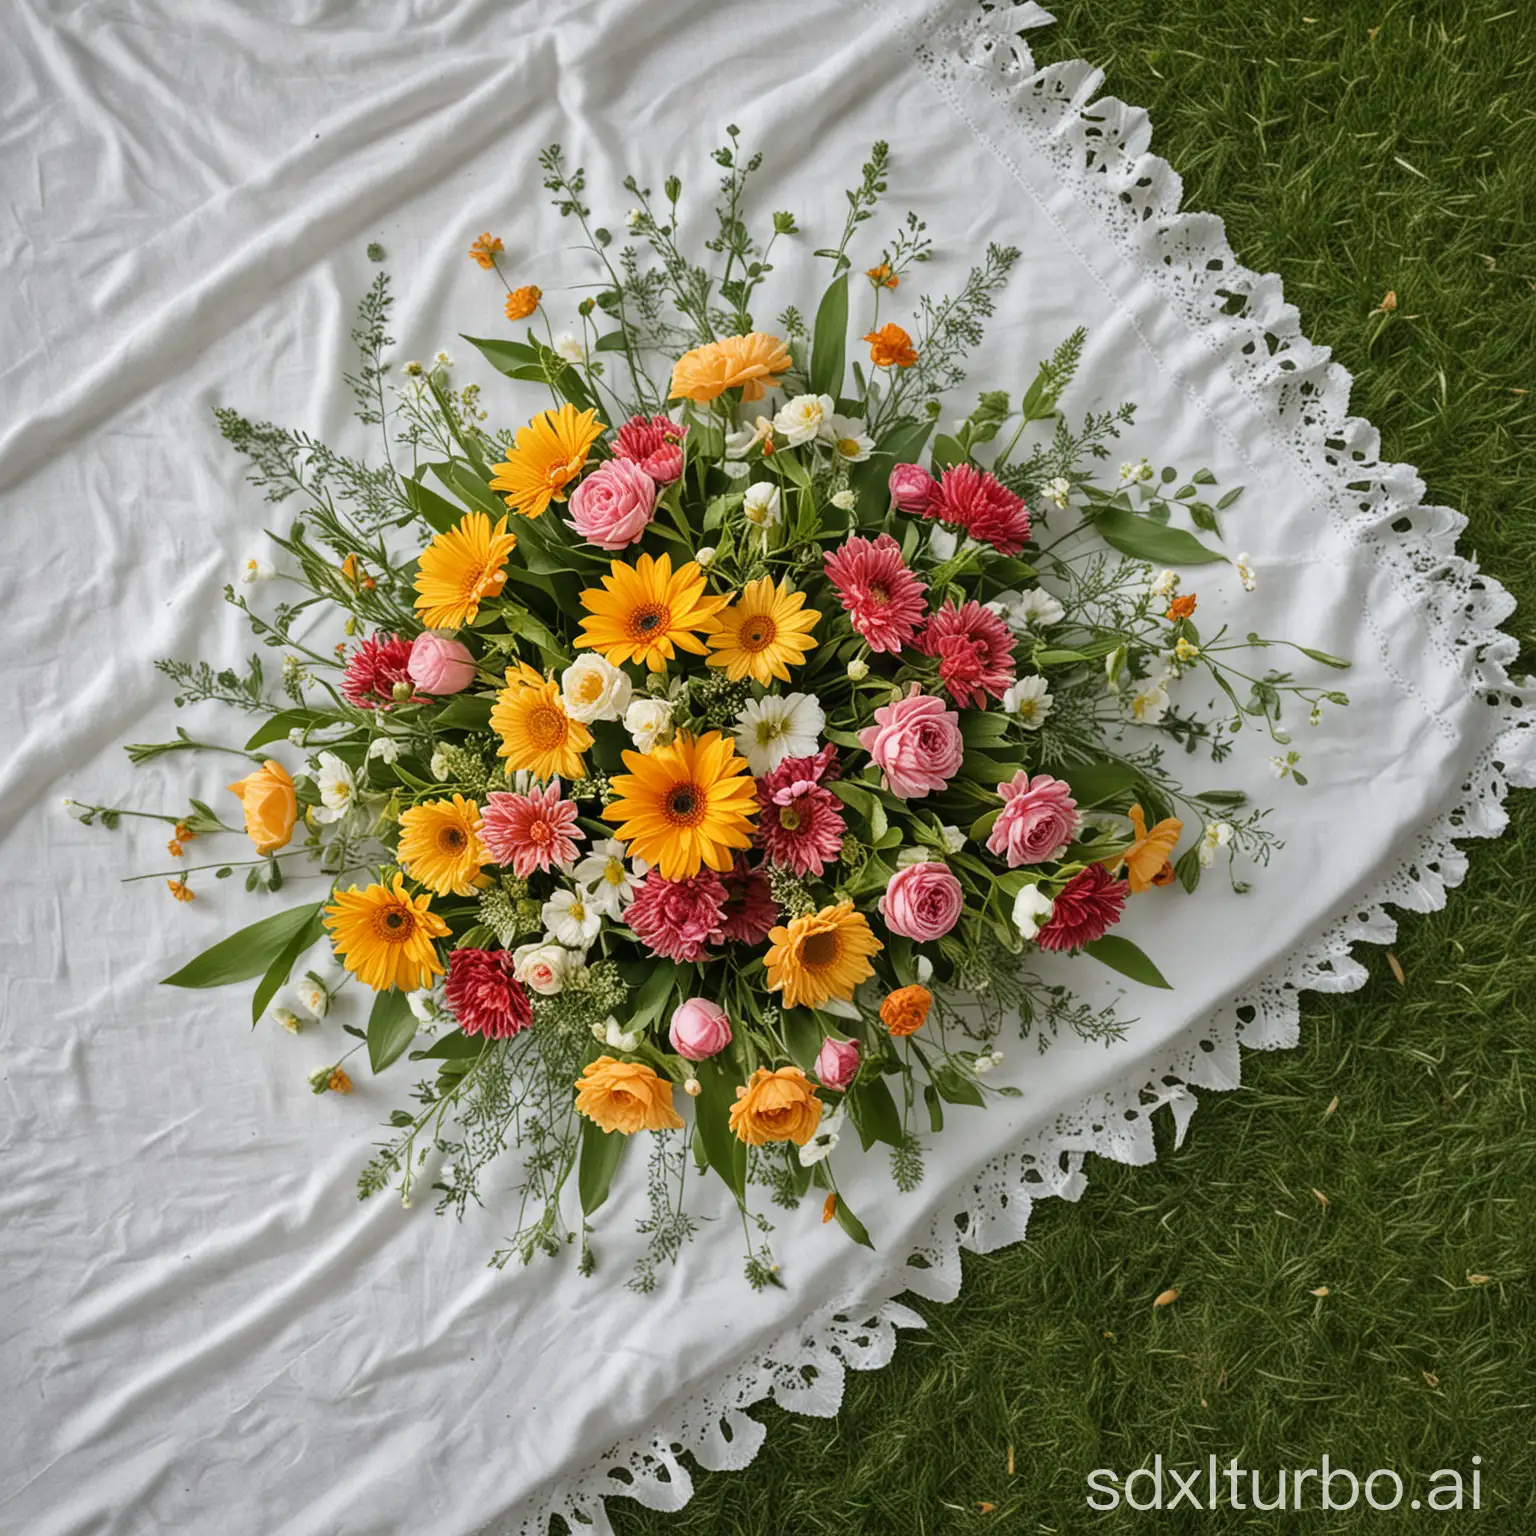 一束美丽的插花，放在一个白色桌布上，周围是绿色的草地